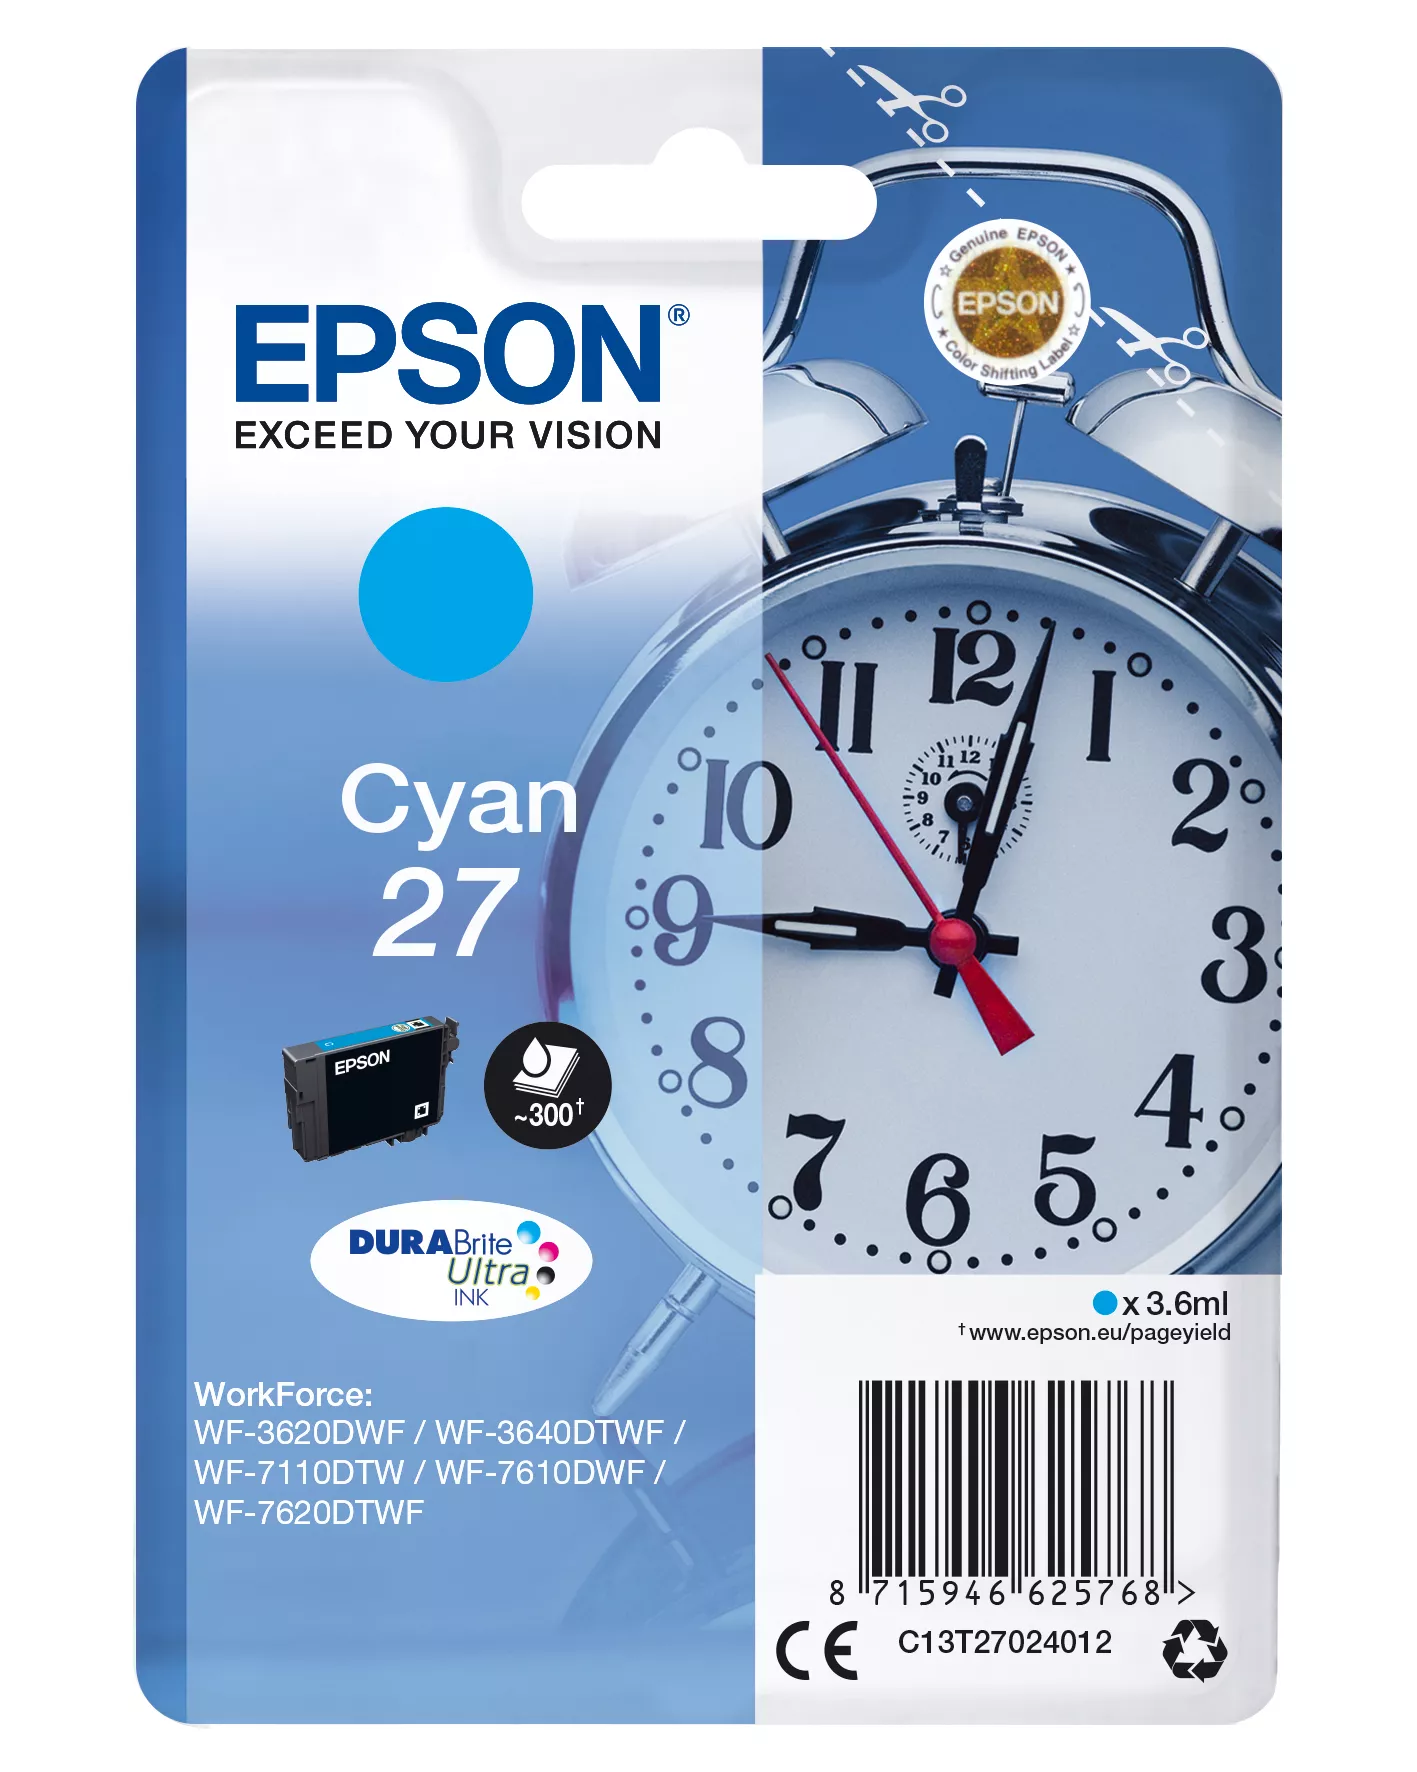 Achat EPSON 27 cartouche d encre cyan capacité standard 3.6ml au meilleur prix